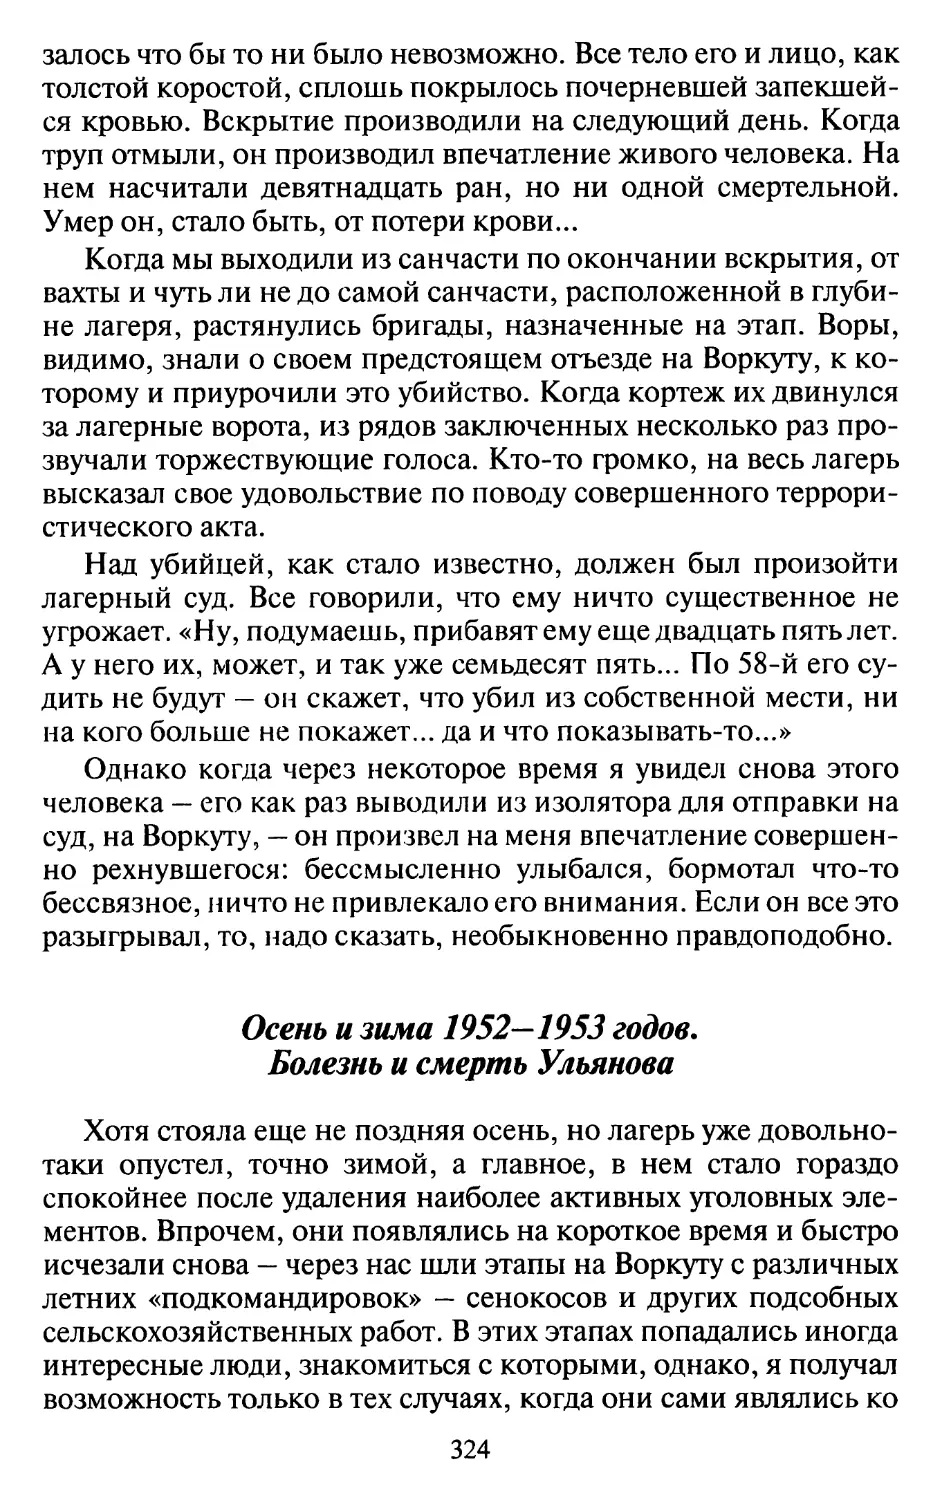 Осень и зима 1952-1953 годов. Болезнь и смерть Ульянова